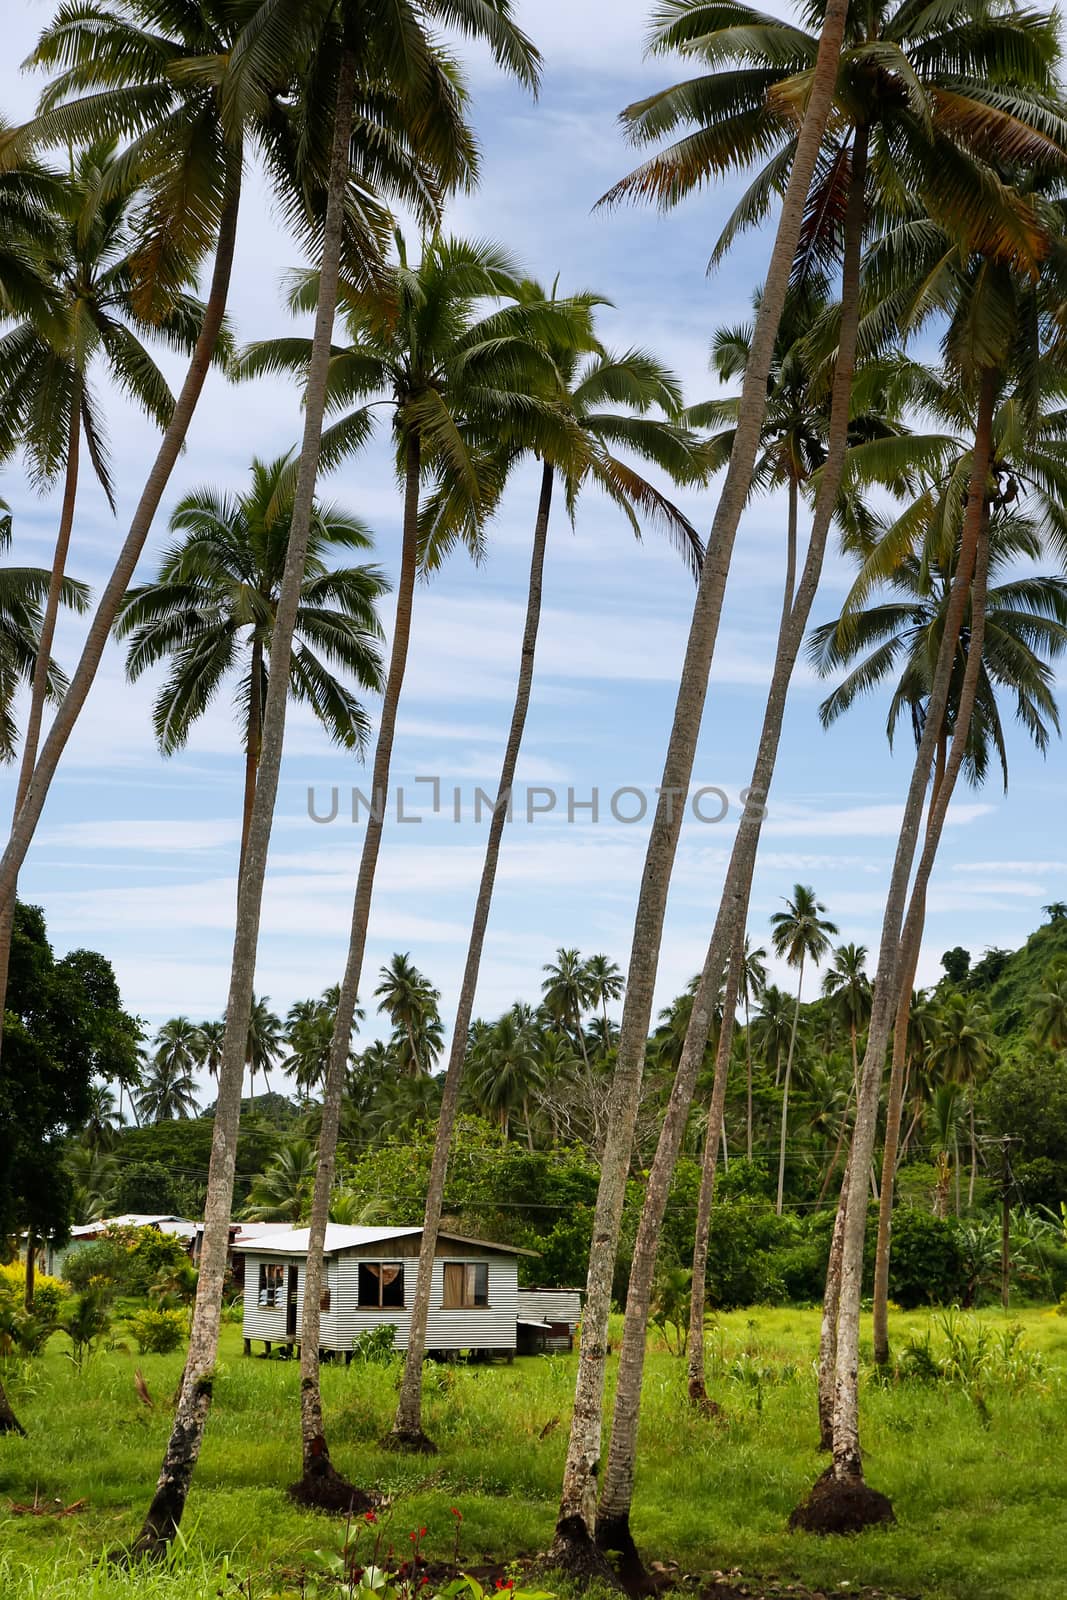 Local house in palm grove, Vanua Levu island, Fiji, South Pacific